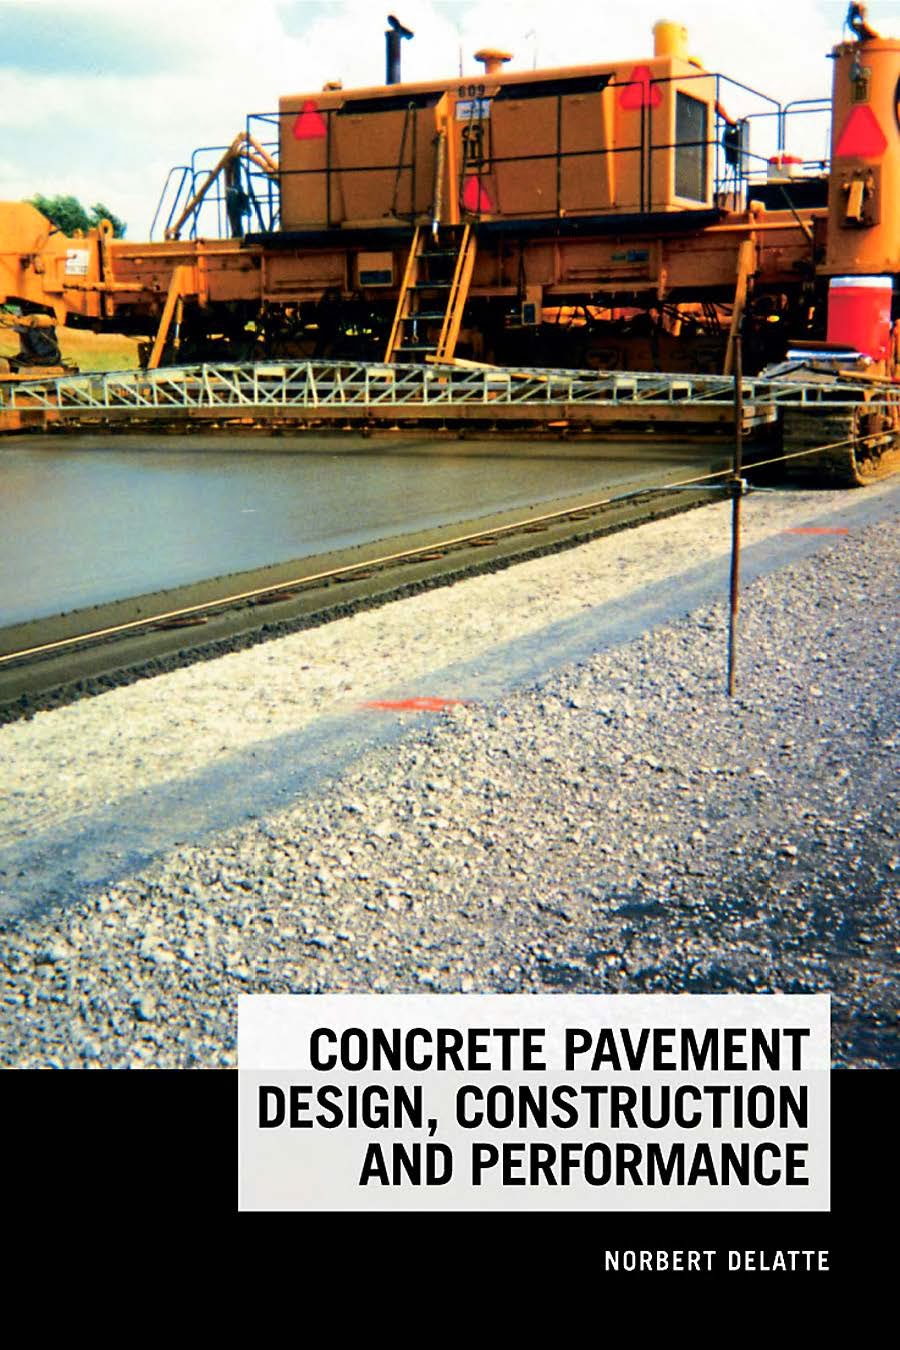 Concrete Pavement Design,Construction & Performance by Norbert Delatte